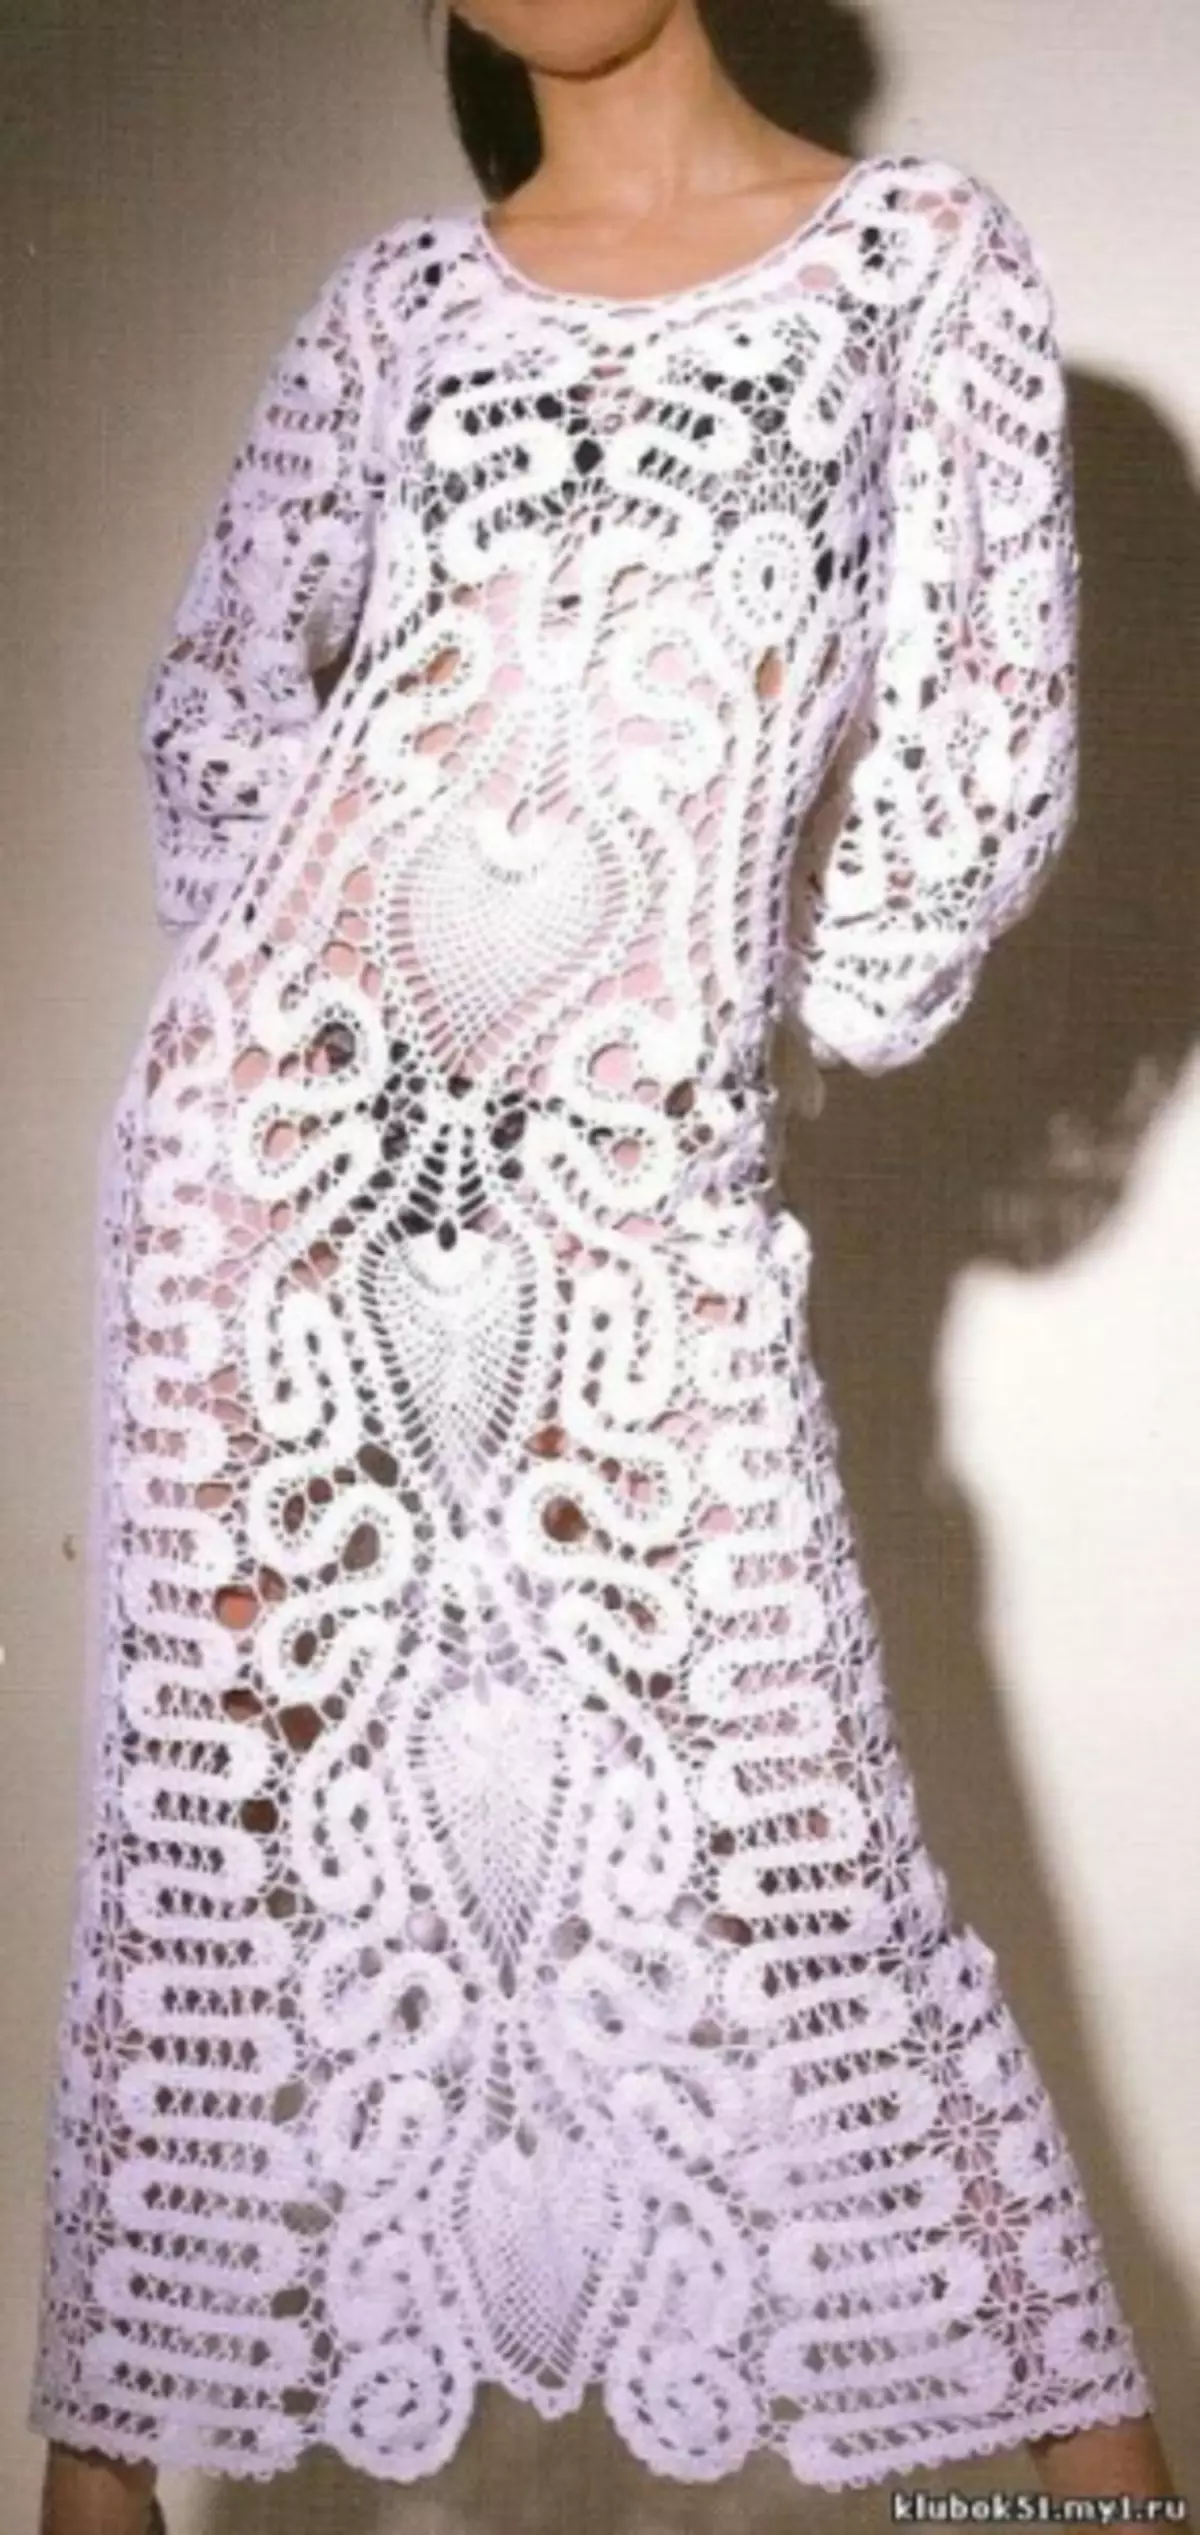 Bruggy Lace：日本の雑誌からの初心者のためのスキーム、ナプキンとビデオを持つドレス